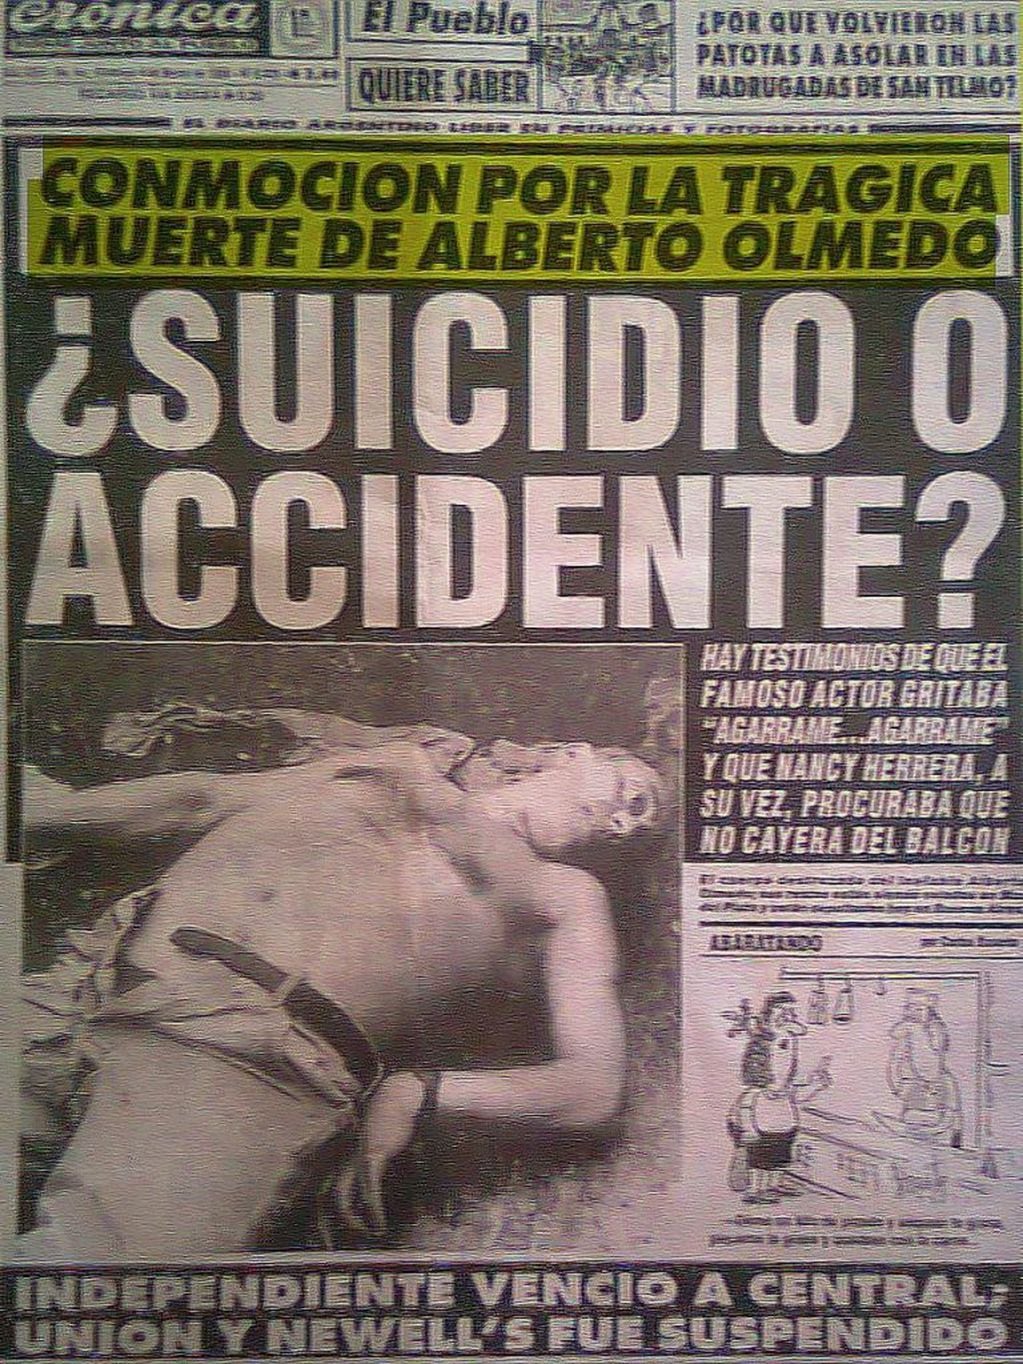 La tapa del diario Crónica con la muerte de Alberto Olmedo.